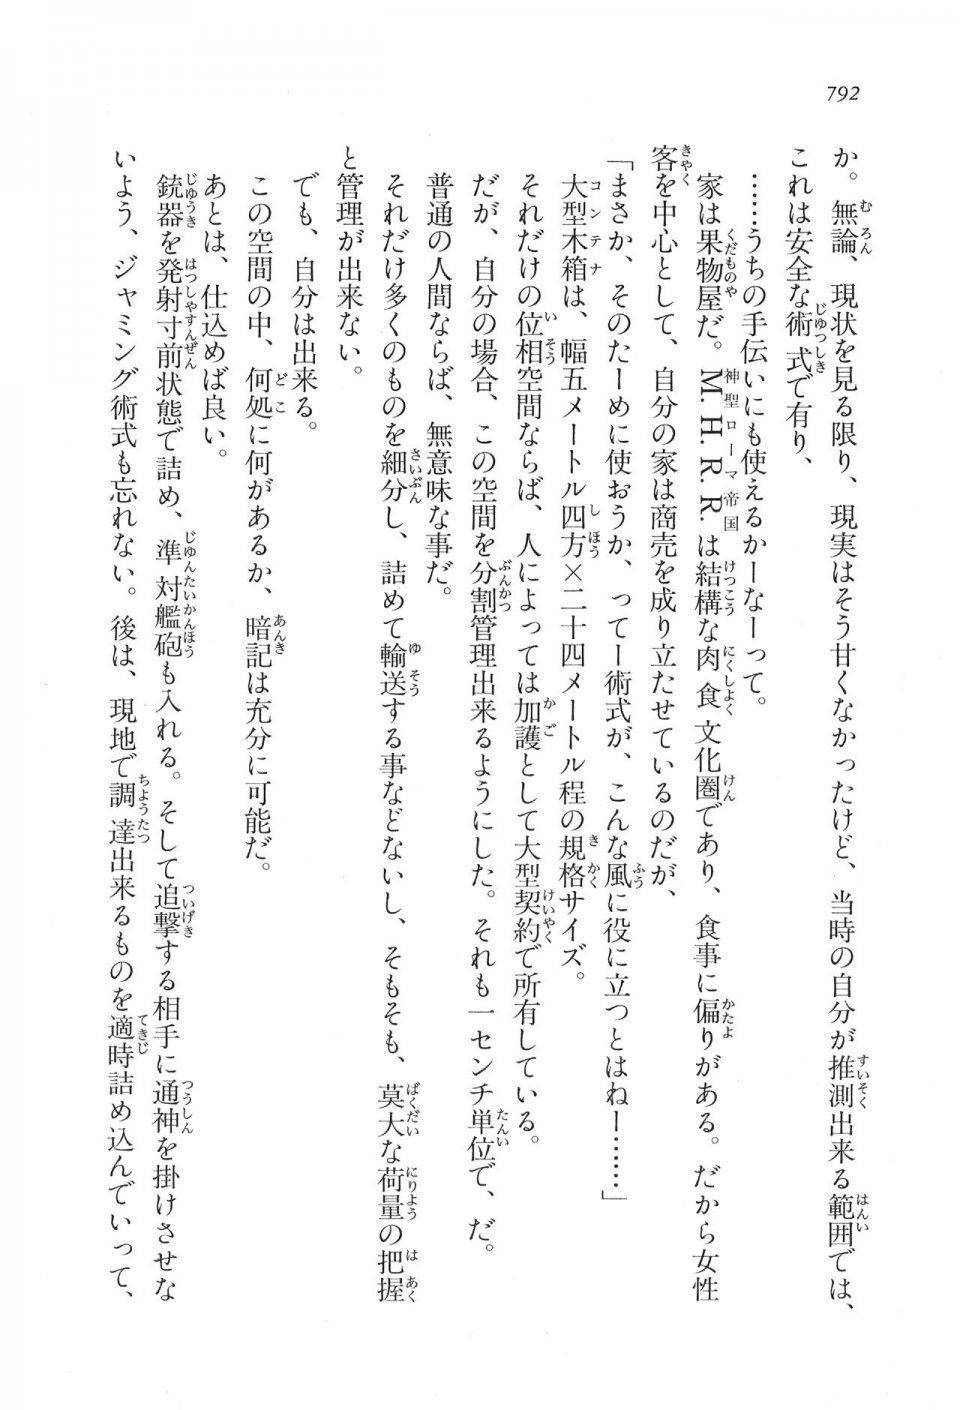 Kyoukai Senjou no Horizon LN Vol 17(7B) - Photo #794